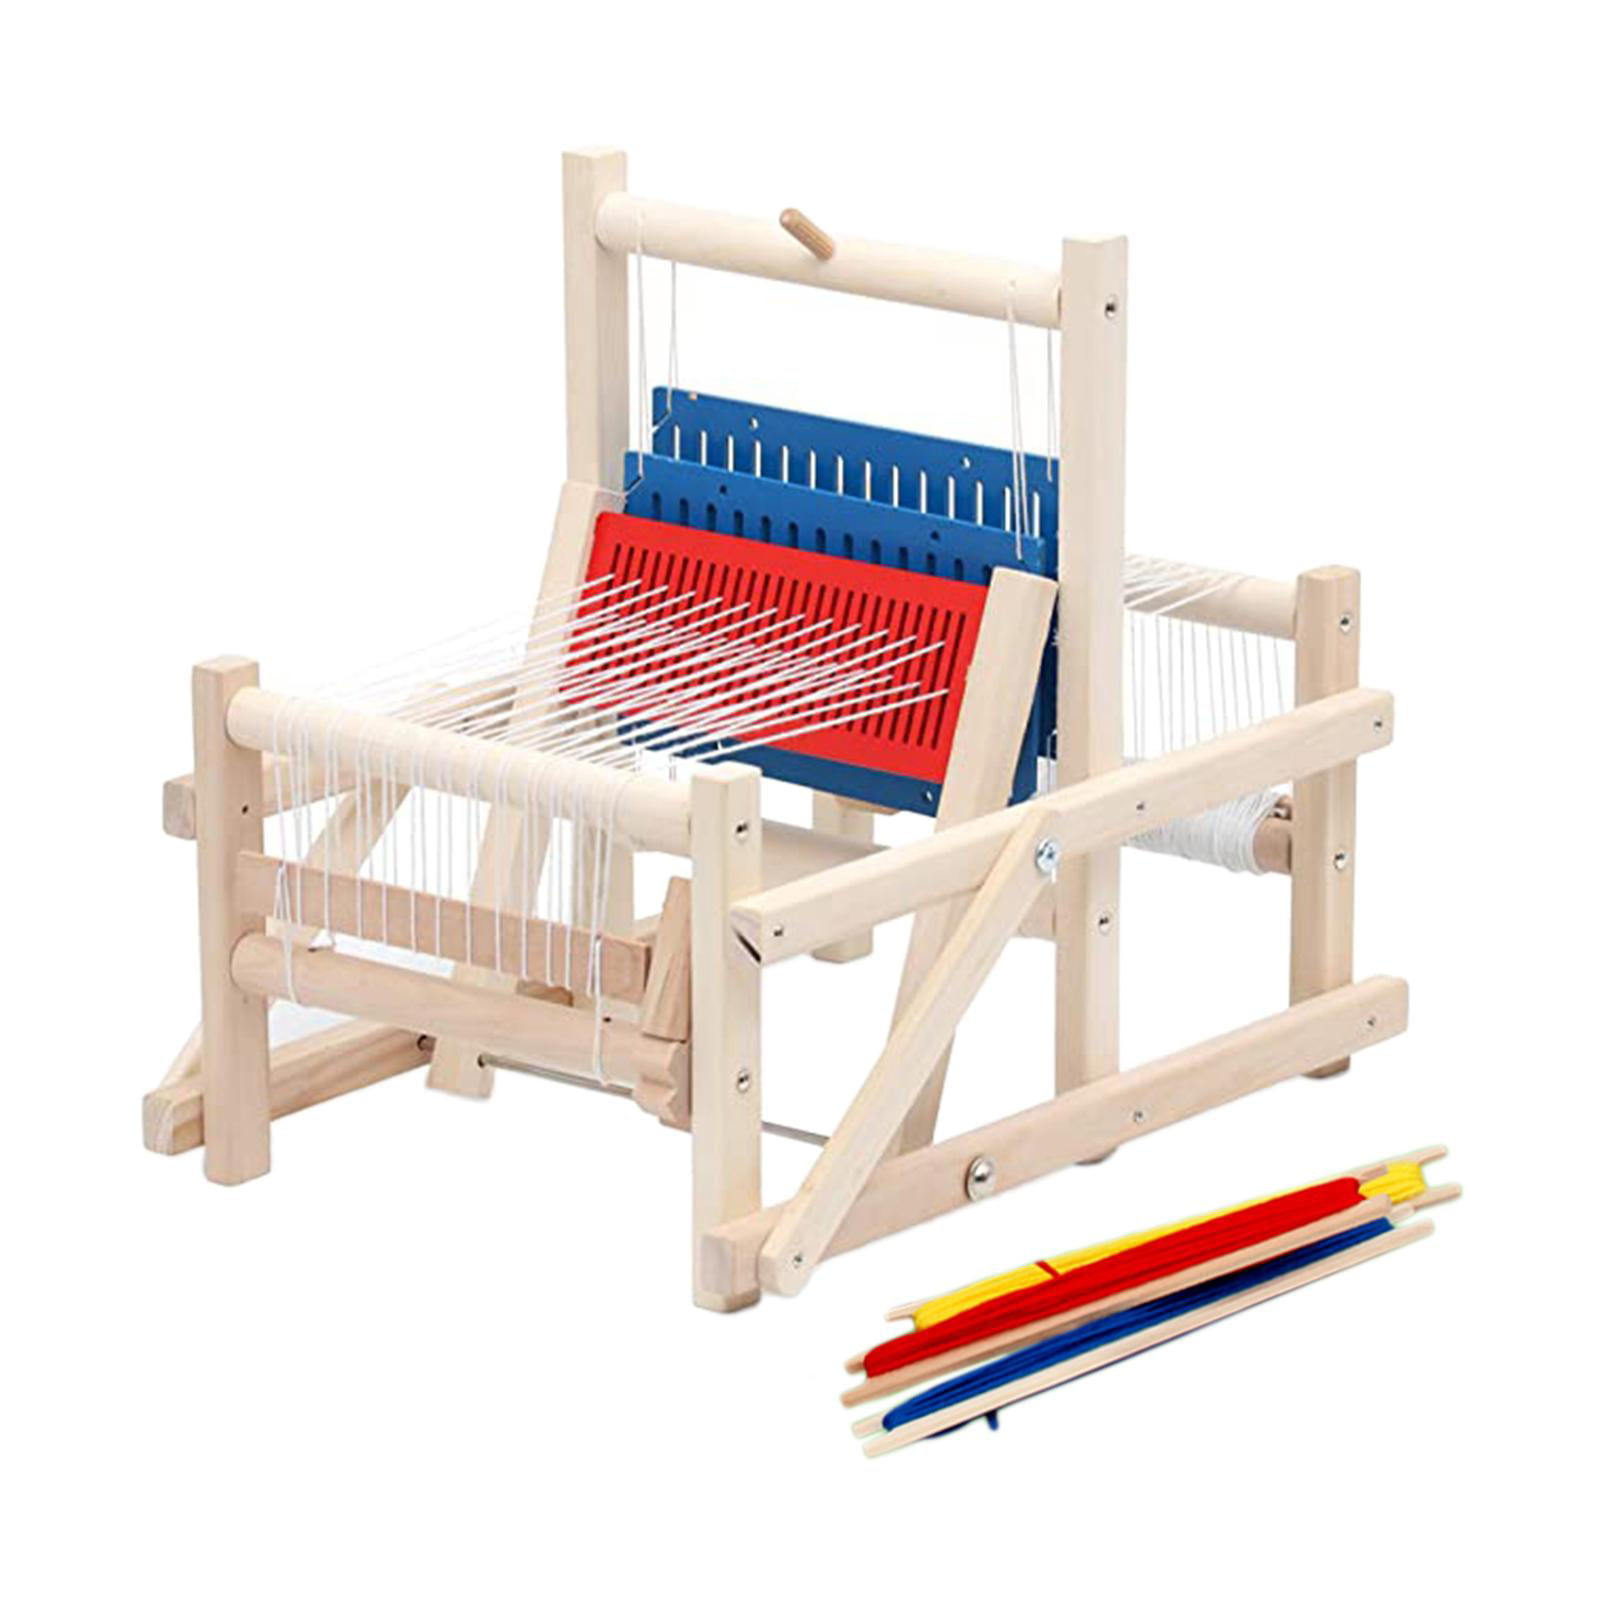 Kids Weaving Loom Kit - Science Diy Toy For Girls, Educational